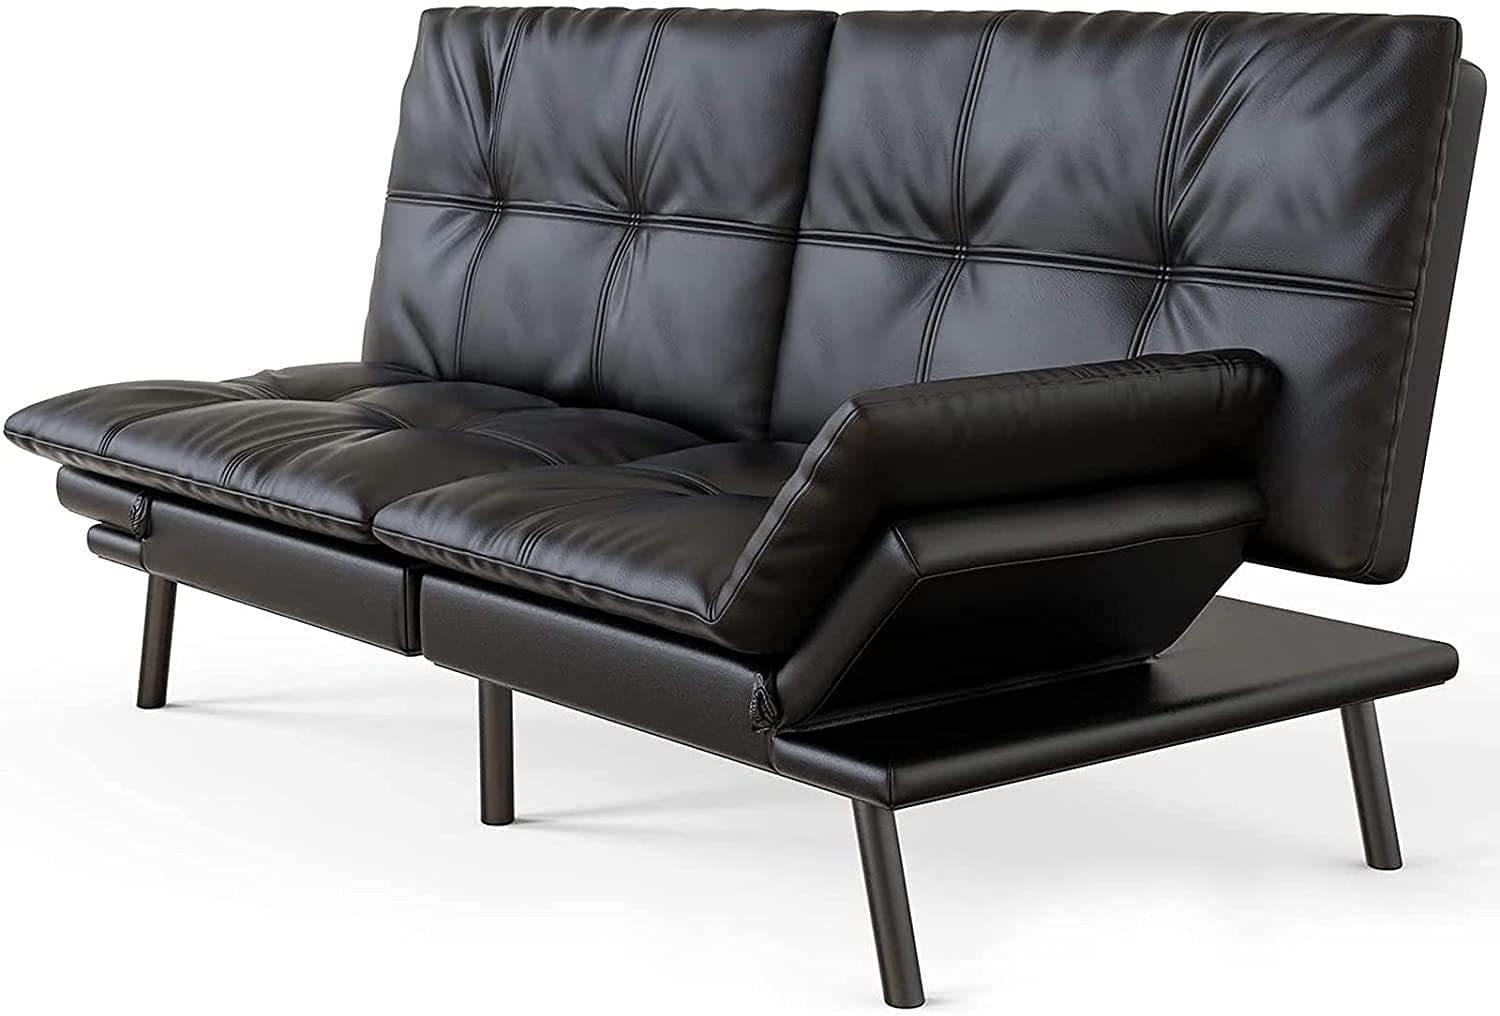 adjustable foldable leisure sofa bed